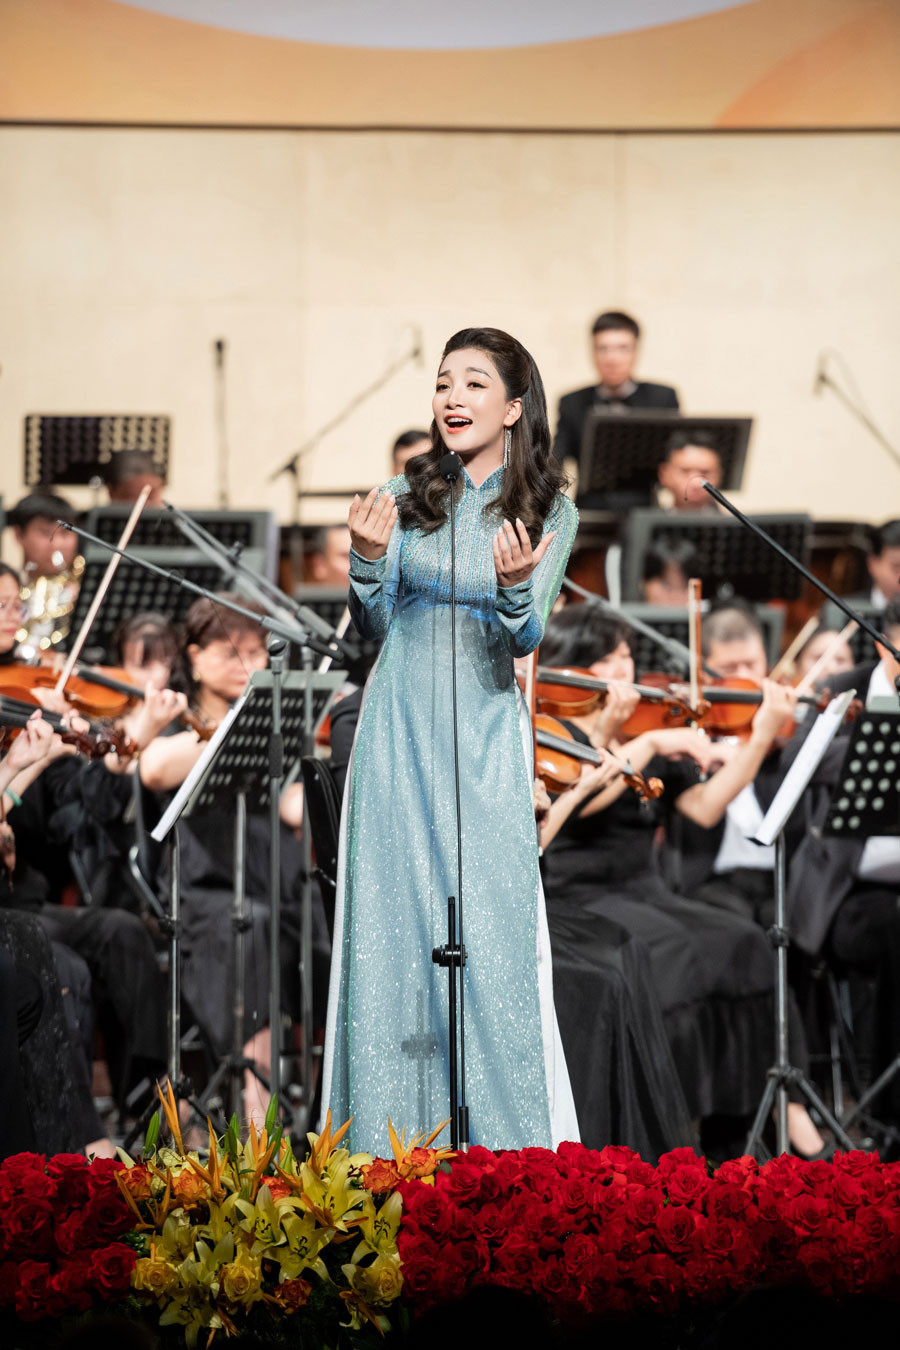 Ca sĩ Phạm Thu Hà lên tiếng khi bị cho là hát sai lời 'Đất nước tình yêu' - Ảnh 1.